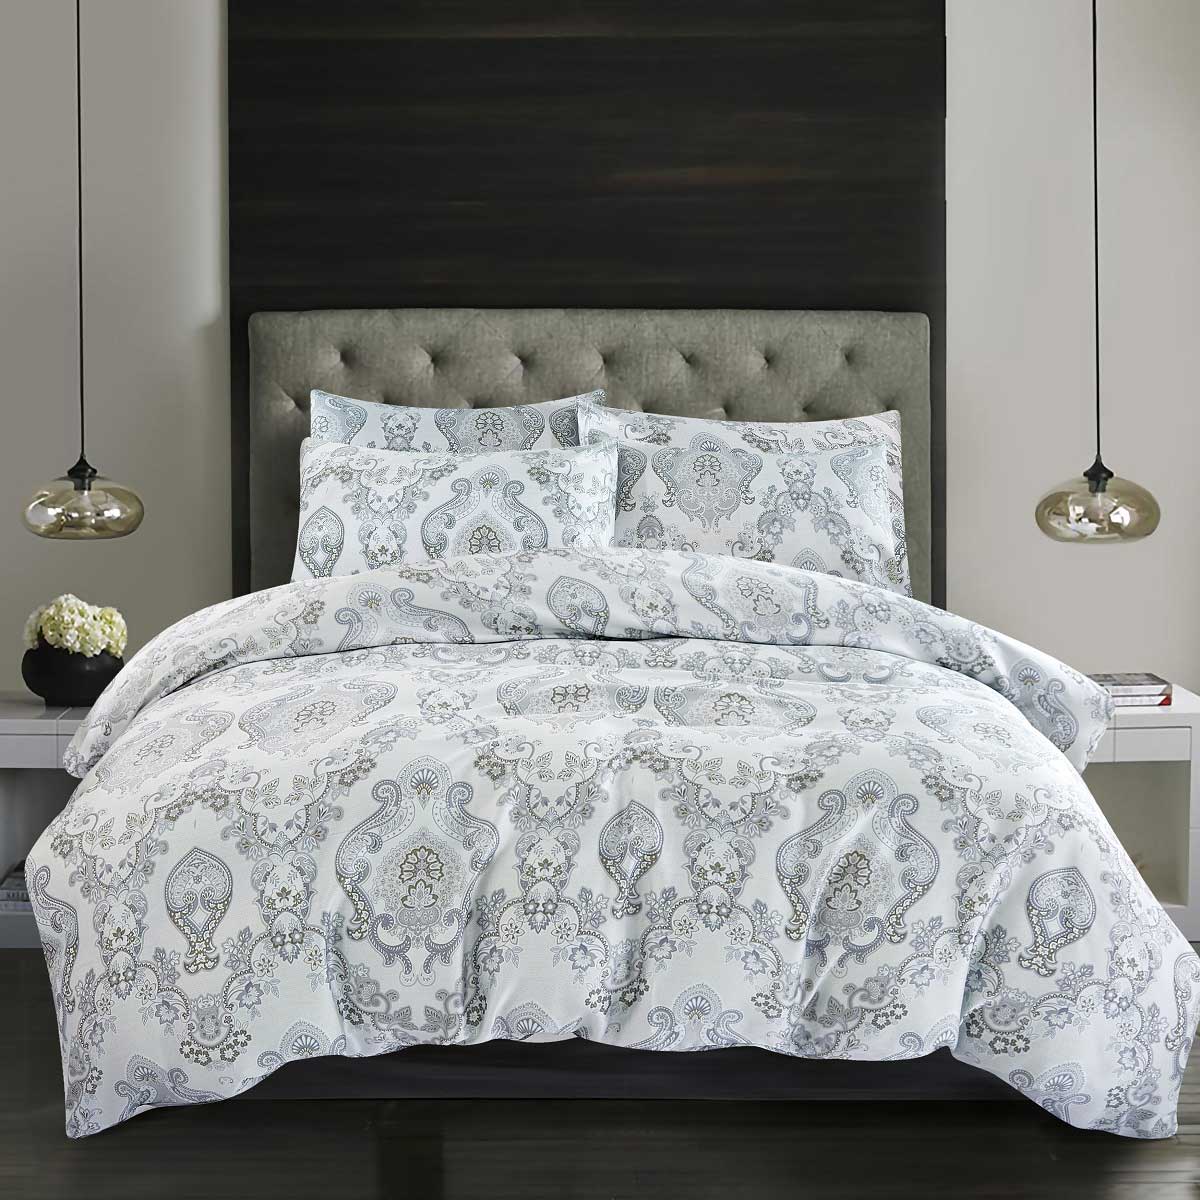 Комплект постельного белья 1,5-спальный Pappel pattern комплект pattern щетка для пола совок